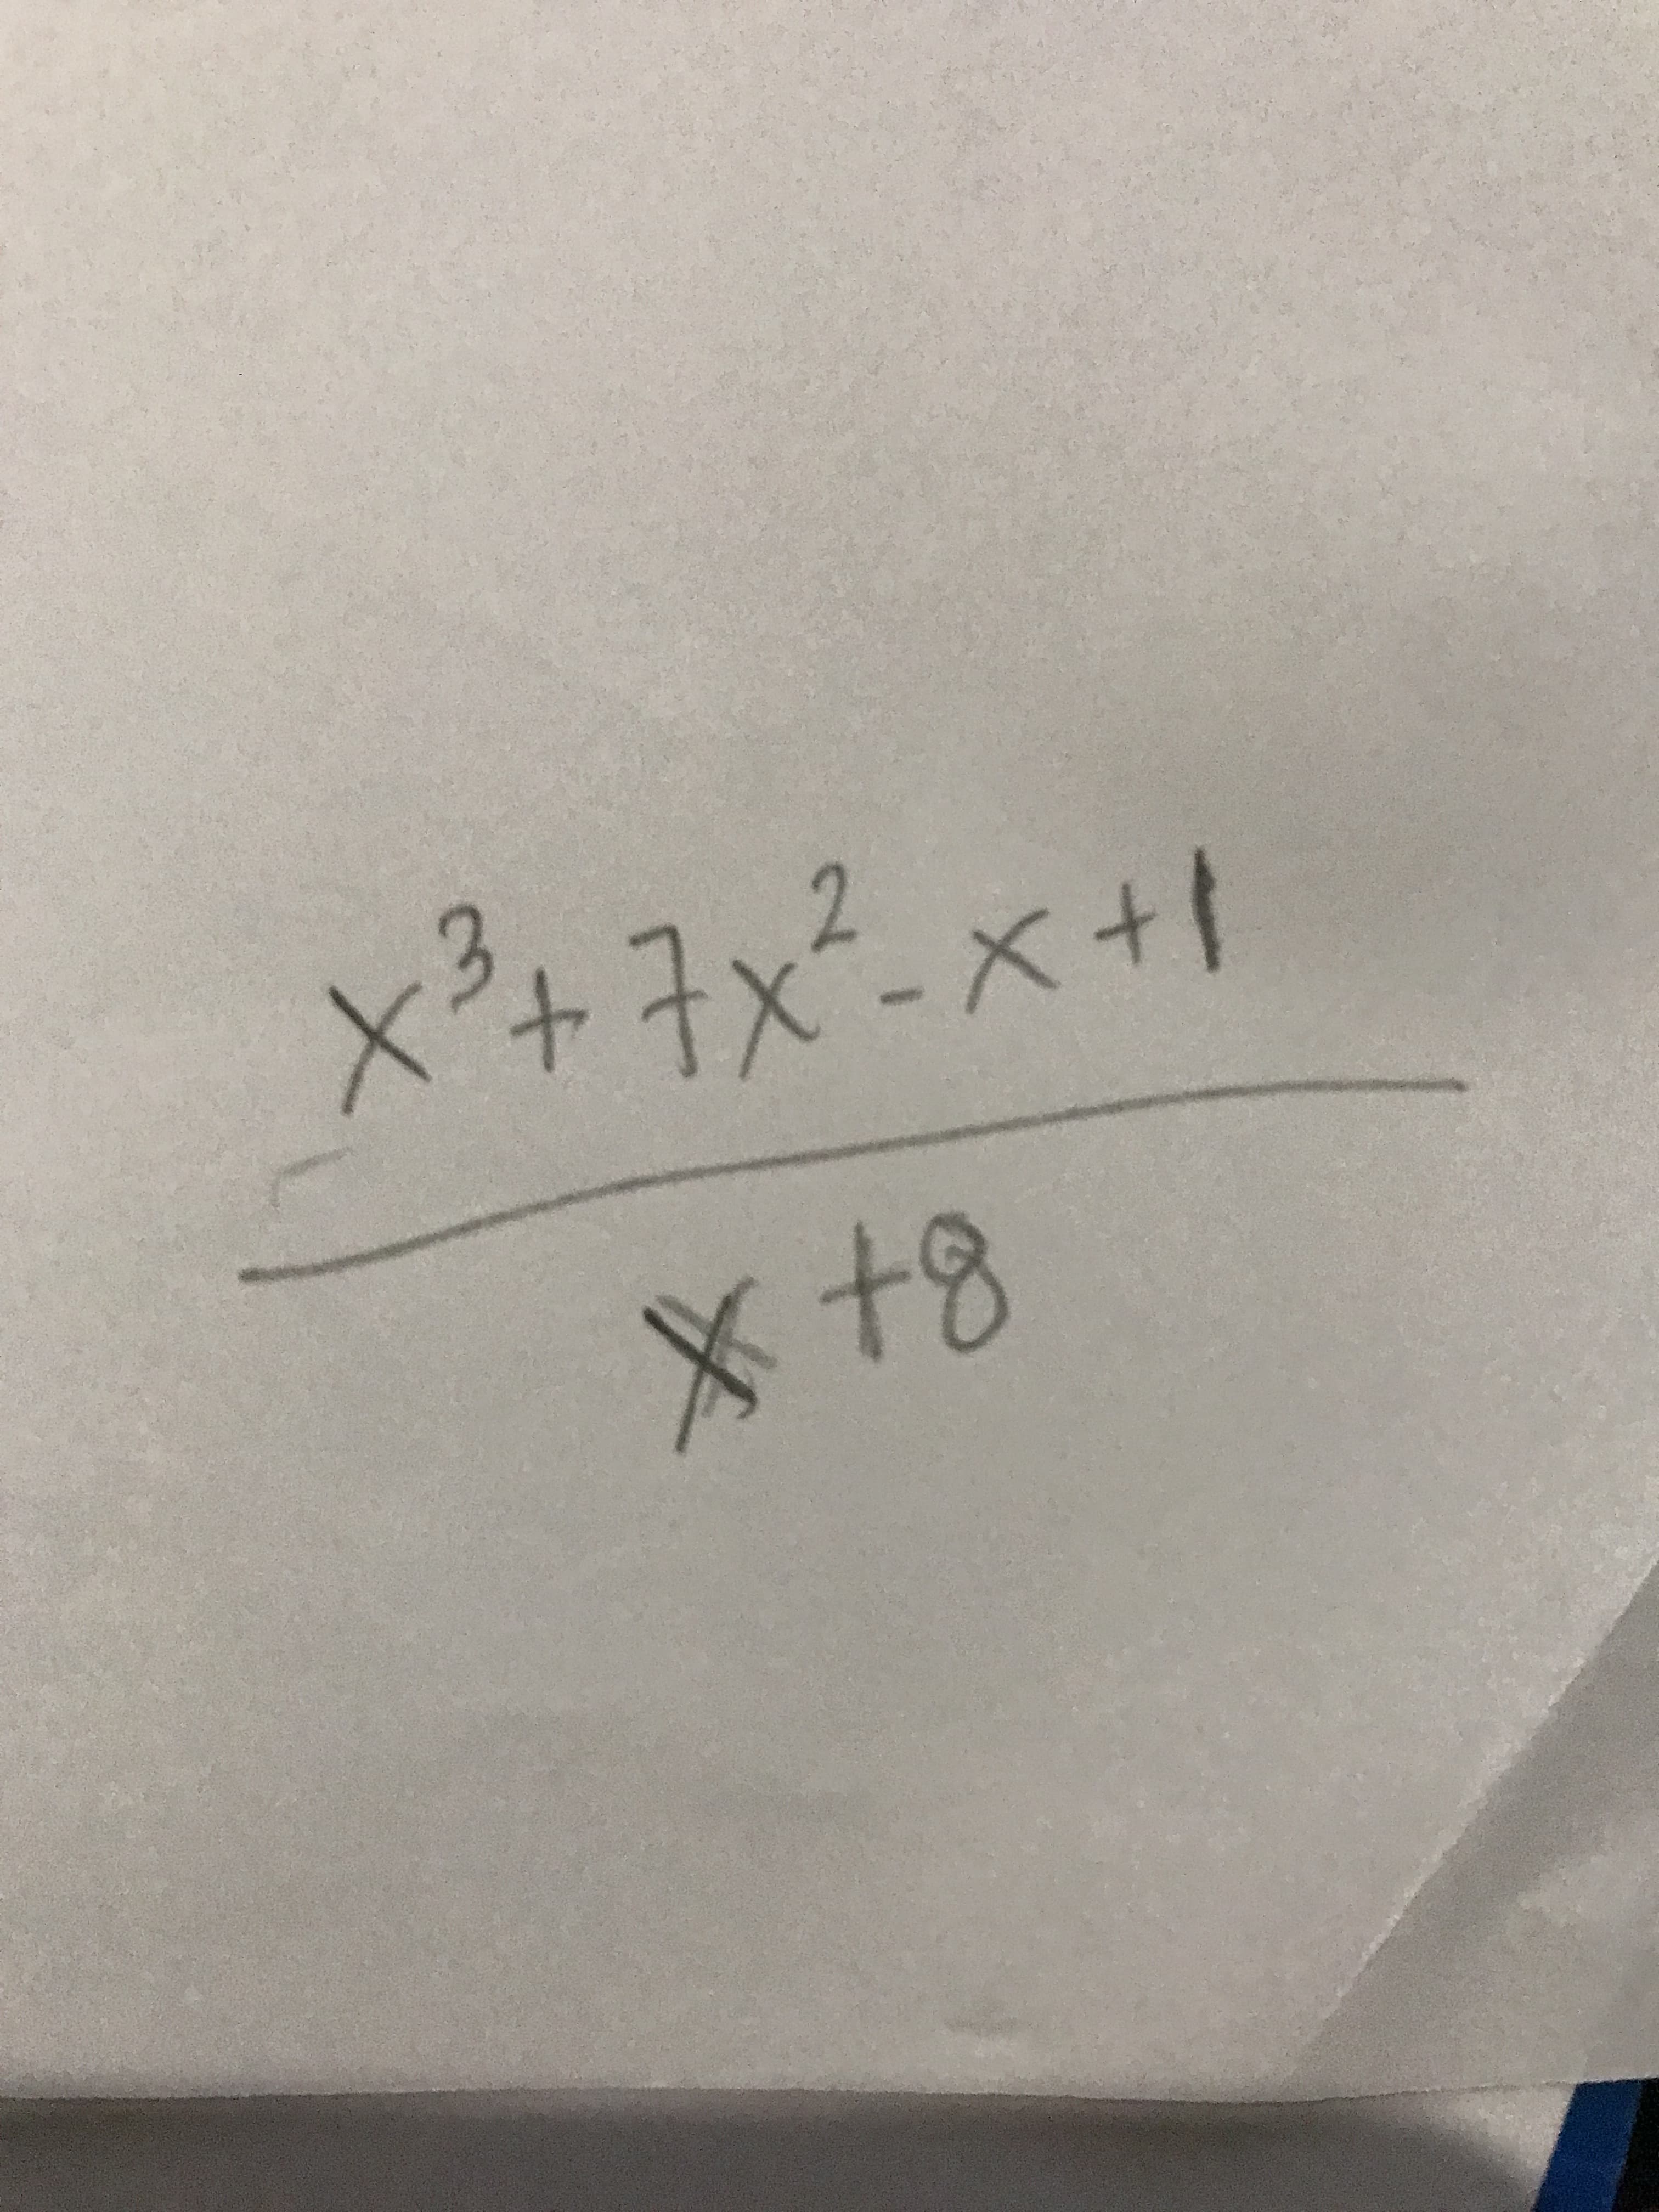 x²+7x²-x+1
X +8
